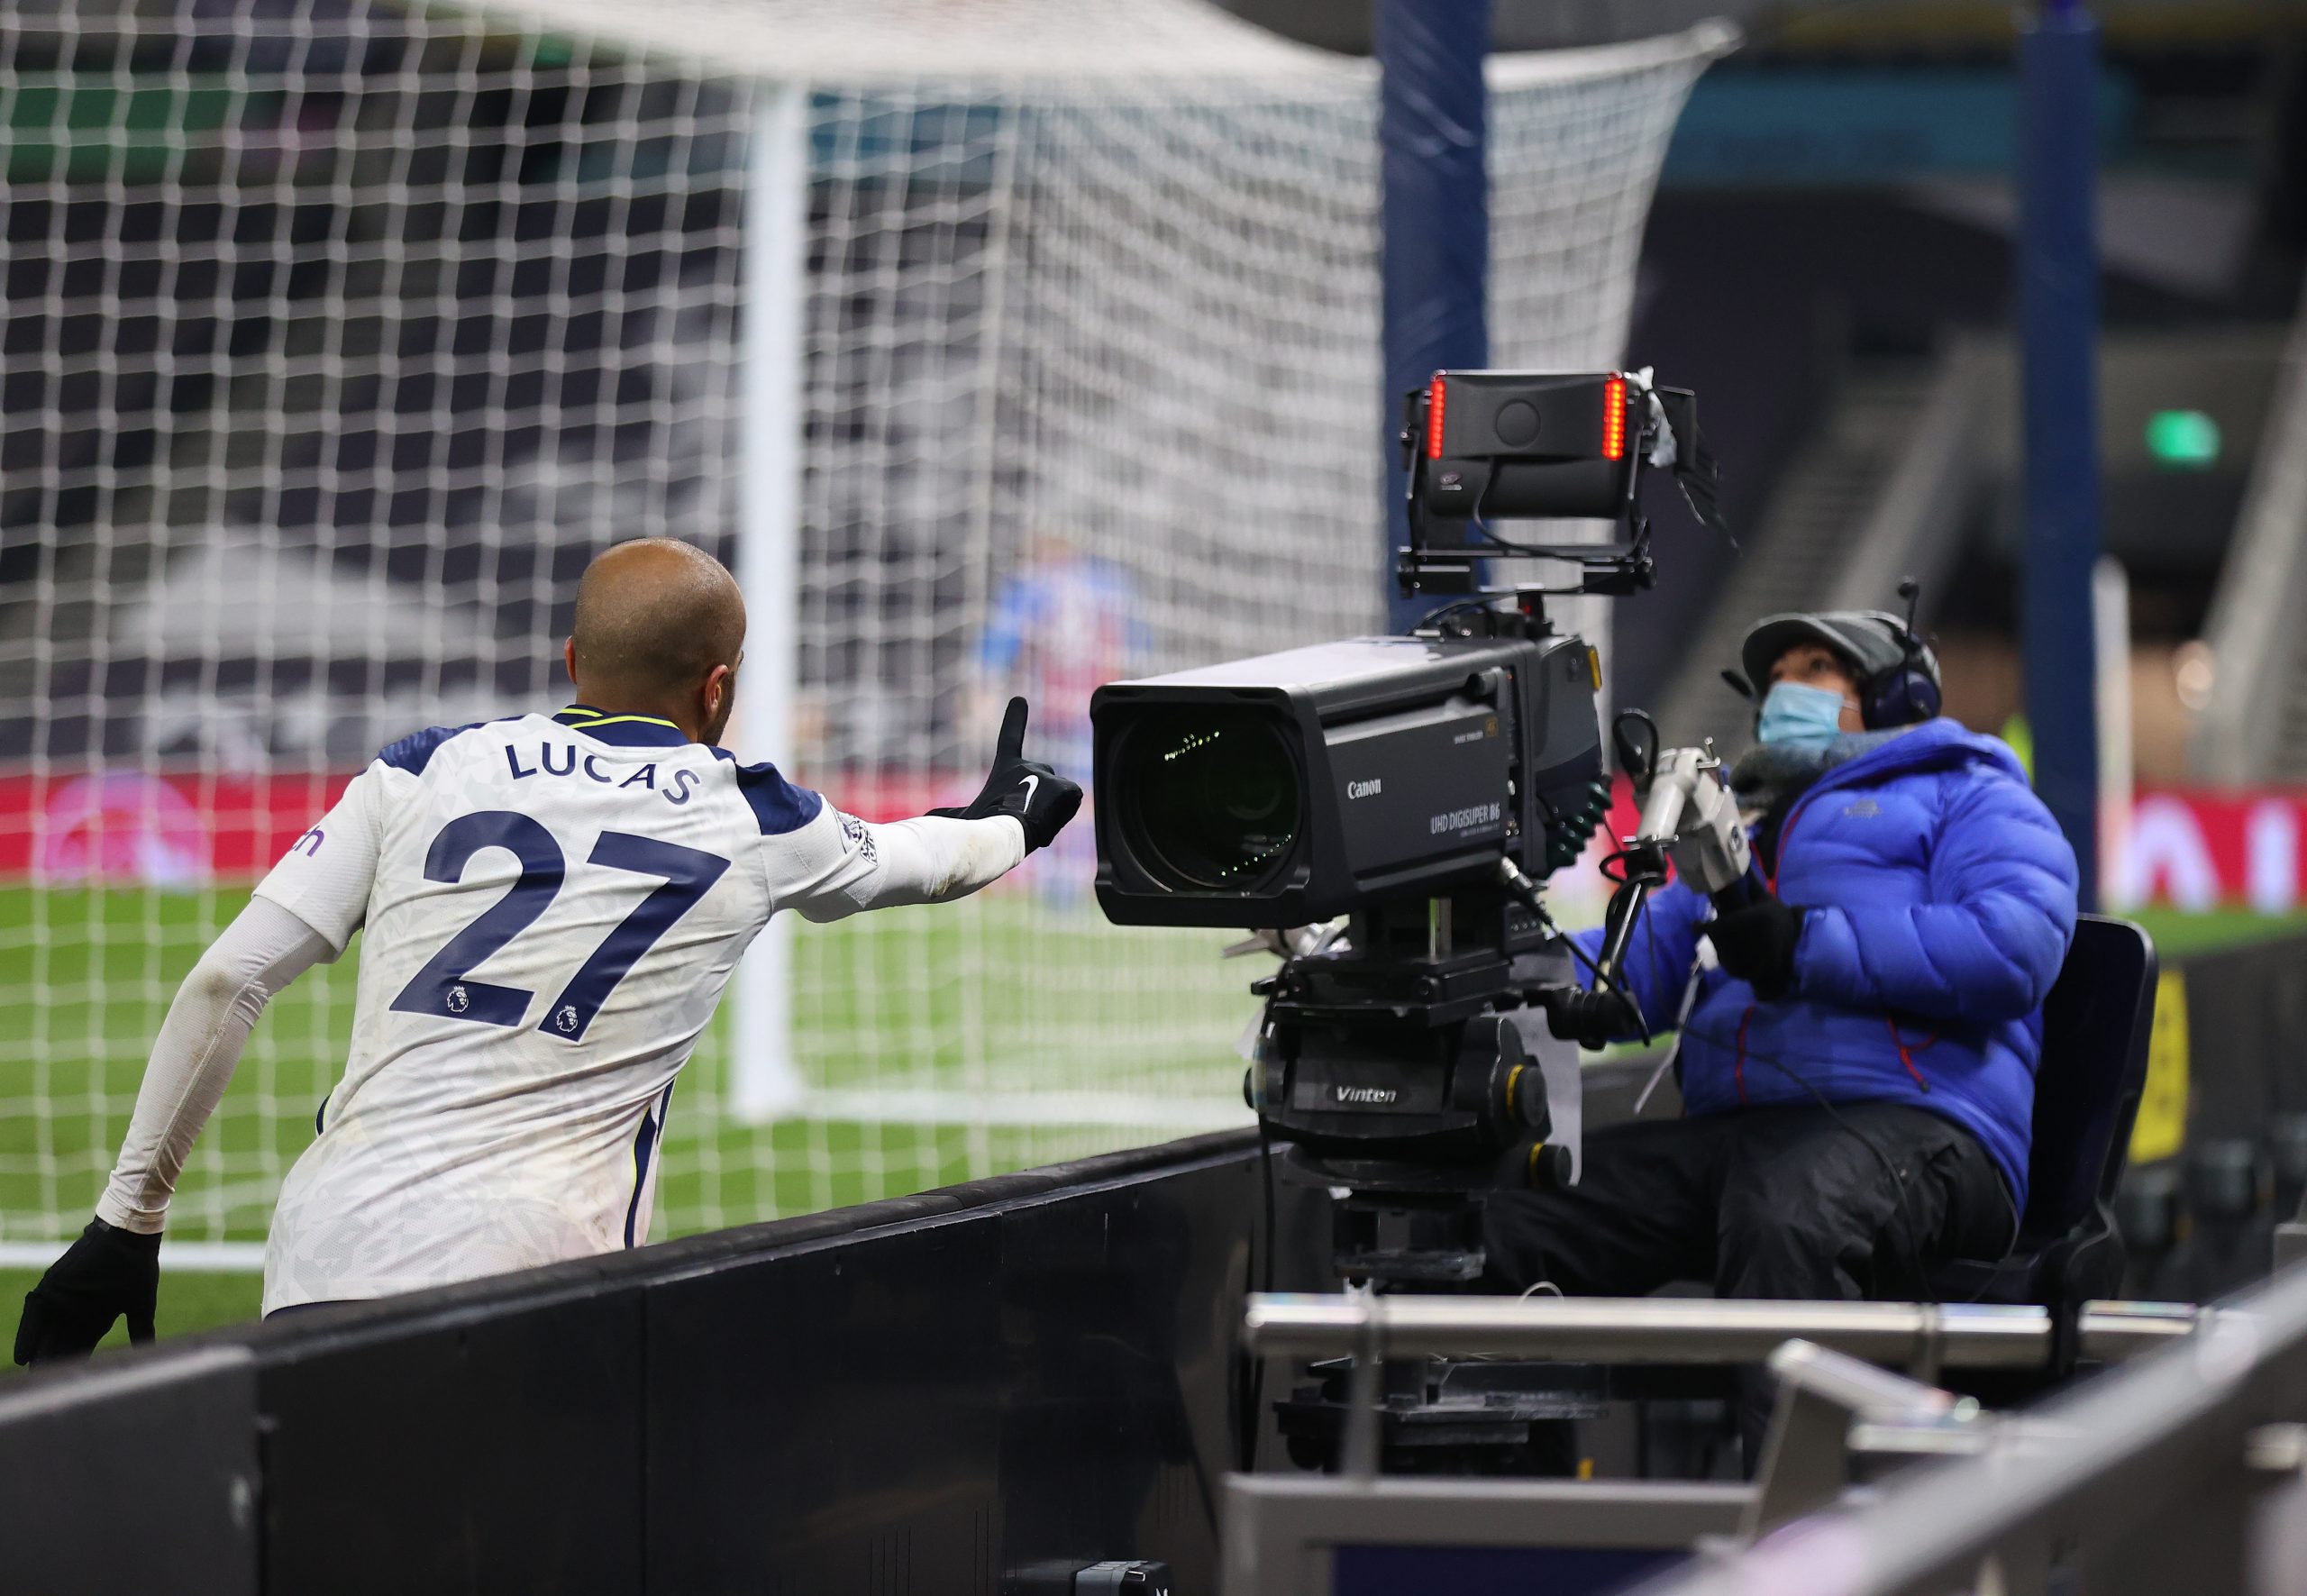 Qatar 2022 por TV Abierta: Dos canales se quedan con los derechos de transmisión del Mundial | Fútbol Chileno